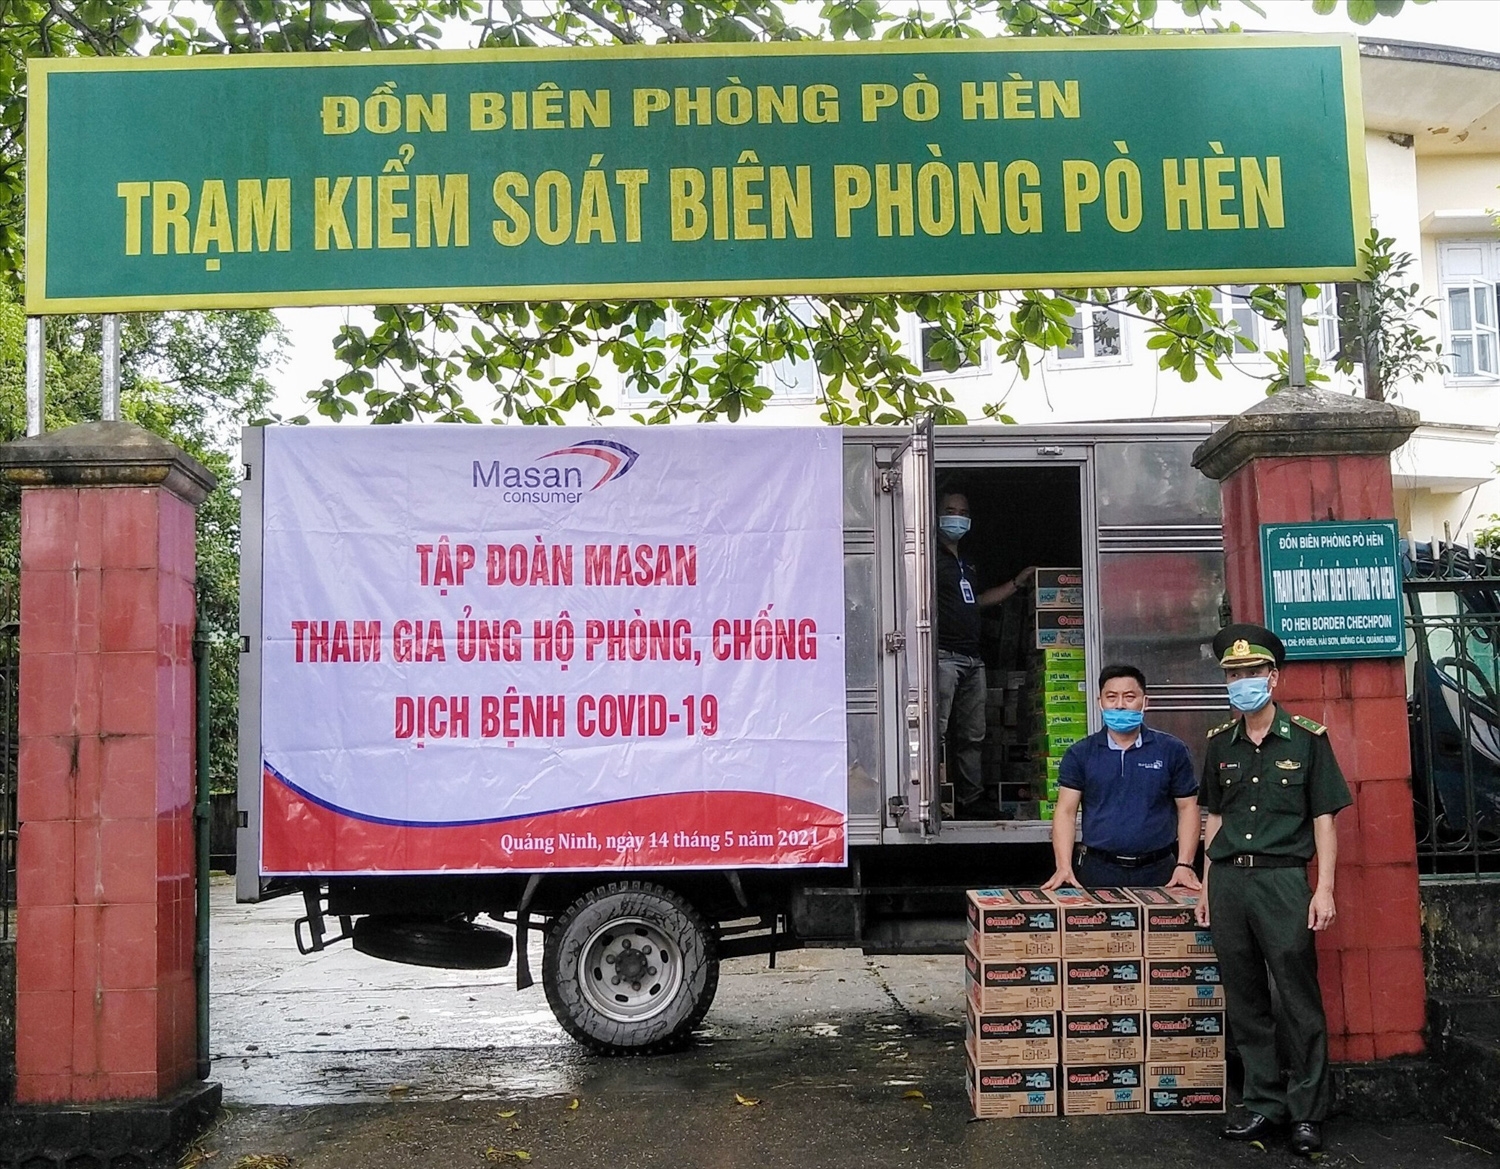 Vừa qua Masan Consumer cũng đến trao tặng các mặt hàng thực phẩm cho Đồn Biên phòng Pò Hèn, tỉnh Quảng Ninh